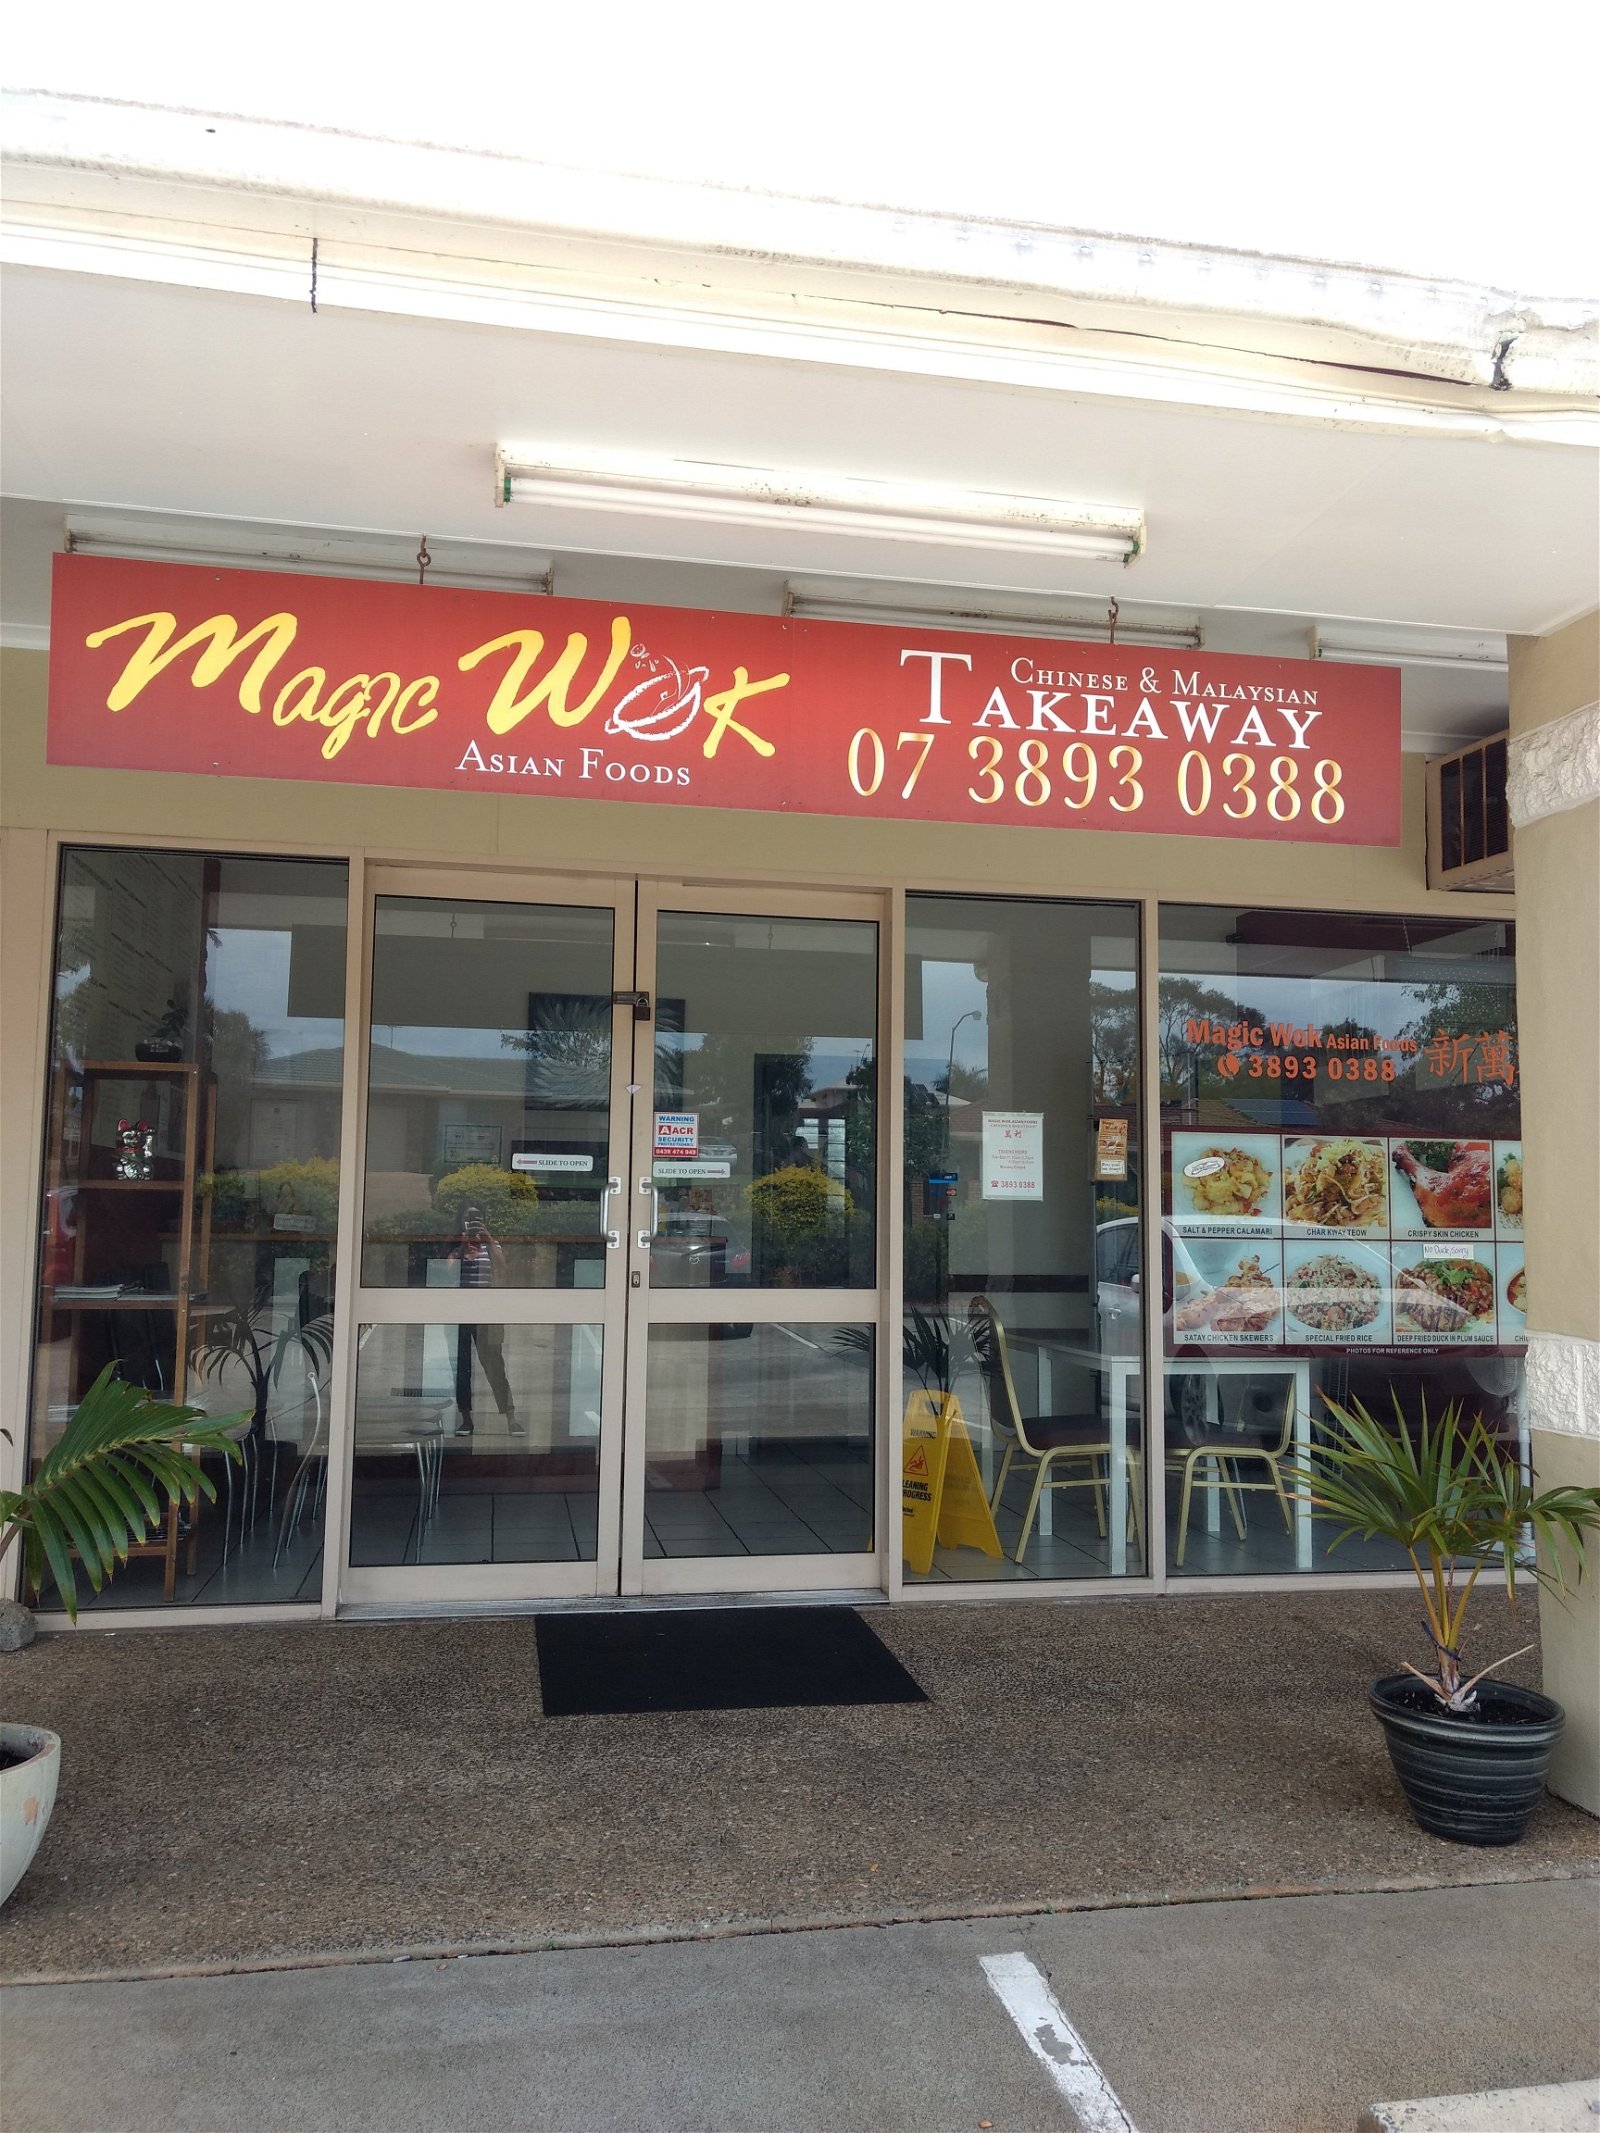 Magic Wok Asian Foods - Broome Tourism